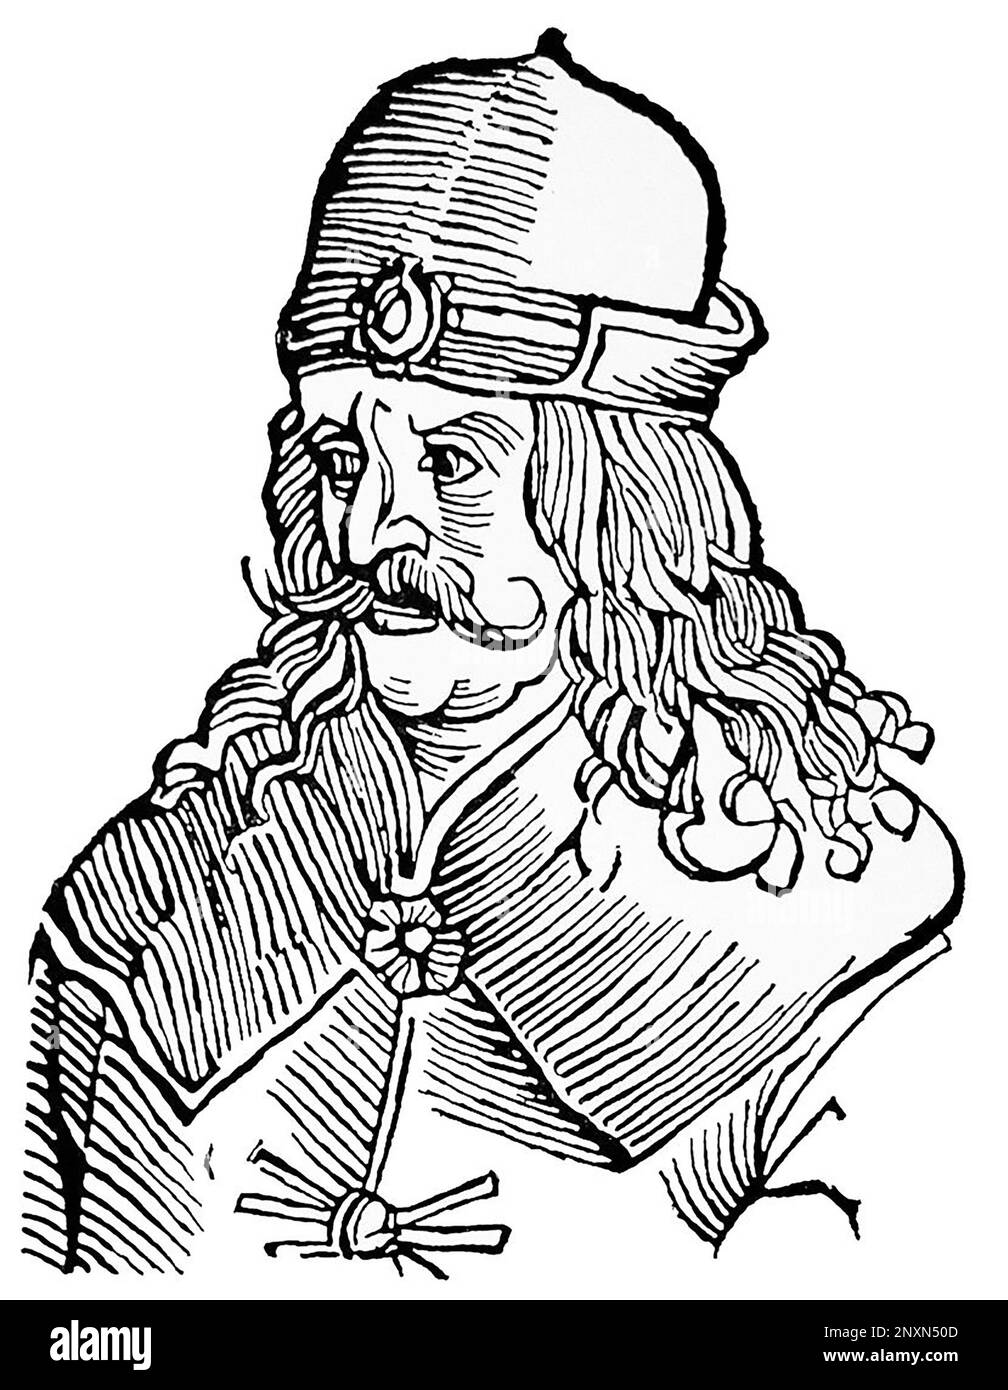 Vlad III, communément connu sous le nom de Vlad l'Impaler ou Vlad Dracula (1428/31, ai 1476/77), était Voïvode de Valachie trois fois. Il est souvent considéré comme l'un des dirigeants les plus importants de l'histoire du Valašsko et comme un héros national de la Roumanie. Célèbre pour sa cruauté, son patronyme a inspiré le nom du vampire littéraire de Bram Stoker, le comte Dracula. Illustration après une gravure du 16th siècle. Banque D'Images